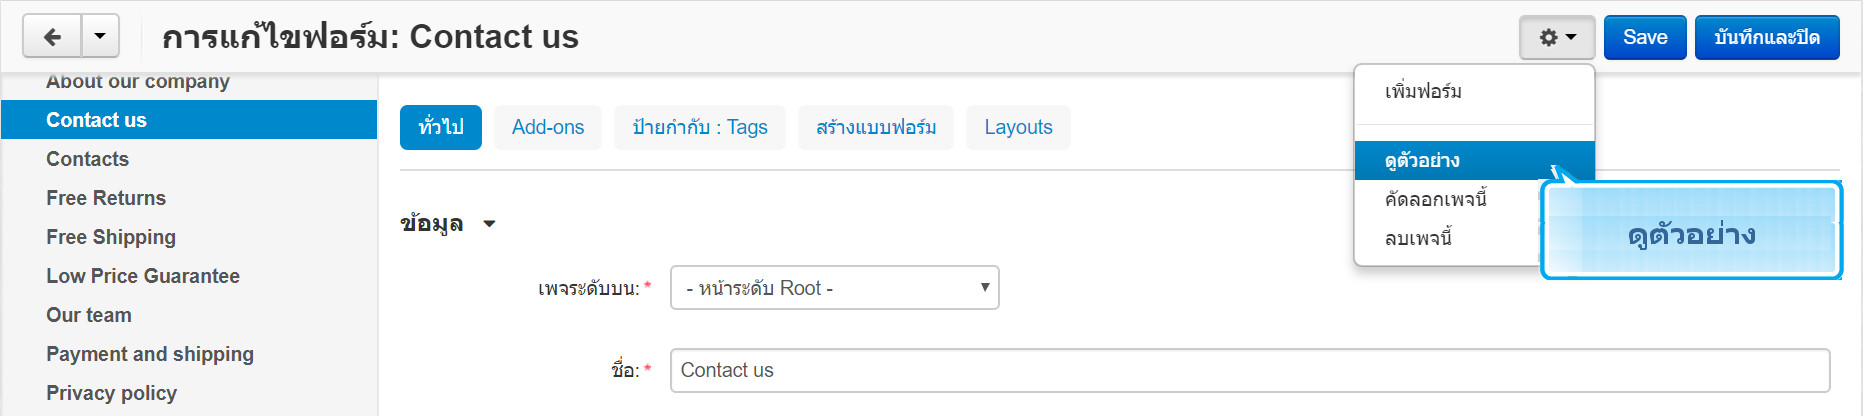 เว็บไซต์สำเร็จรูปไทย - คู่มือร้านออนไลน์ - การจัดการร้านออนไลน์ -เว็บเพจ pages -เรียกดูตัวอย่างเว็บเพจ